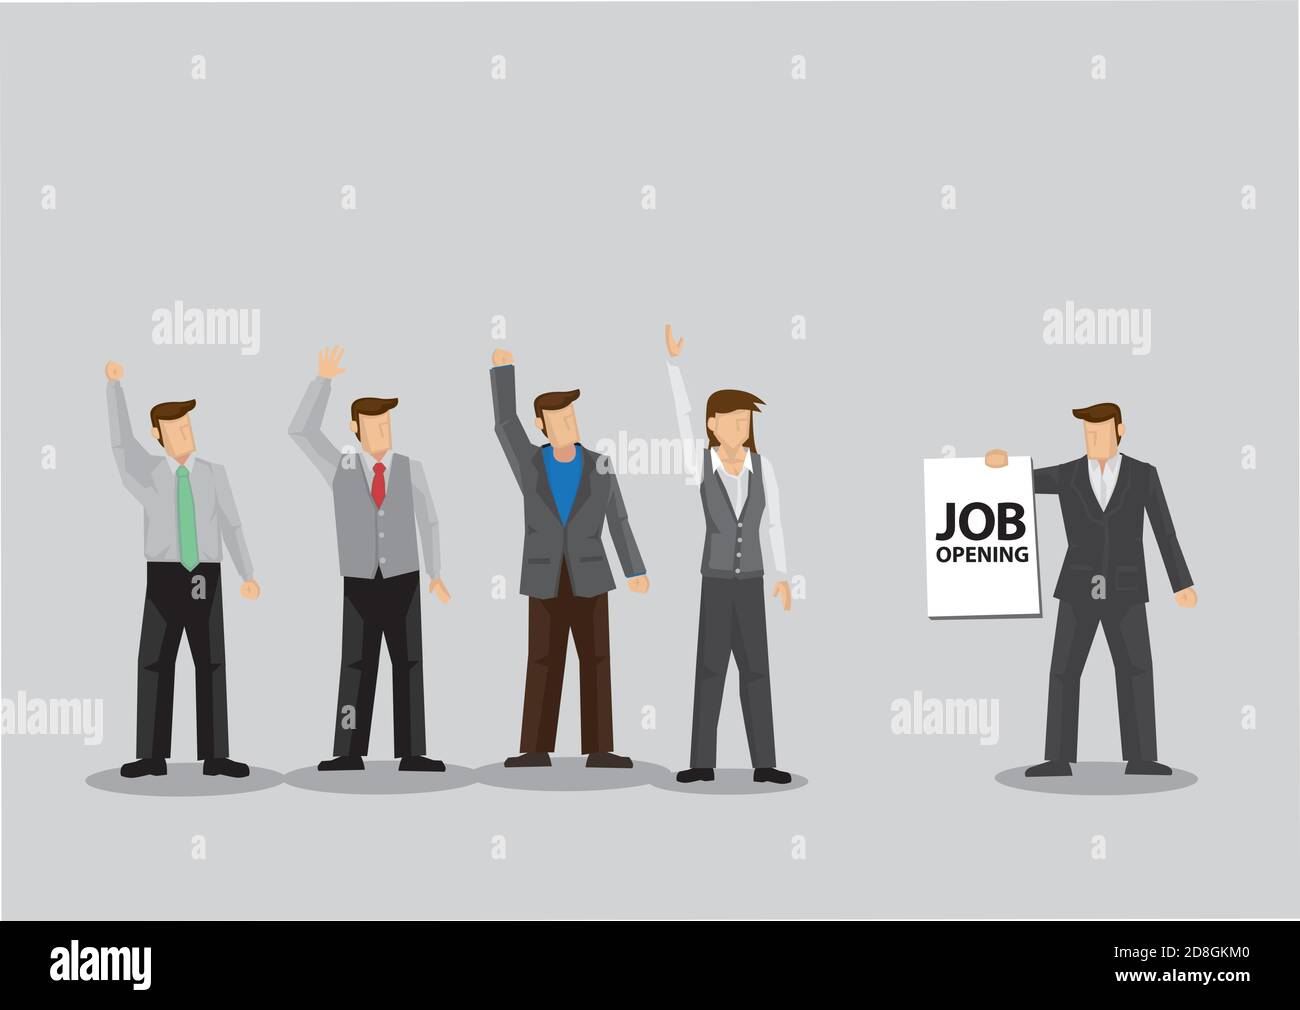 Un groupe d'employés lève les mains pour l'opportunité d'ouverture d'emploi. Illustration vectorielle de dessin animé pour le concept d'emploi et de recrutement. Illustration de Vecteur